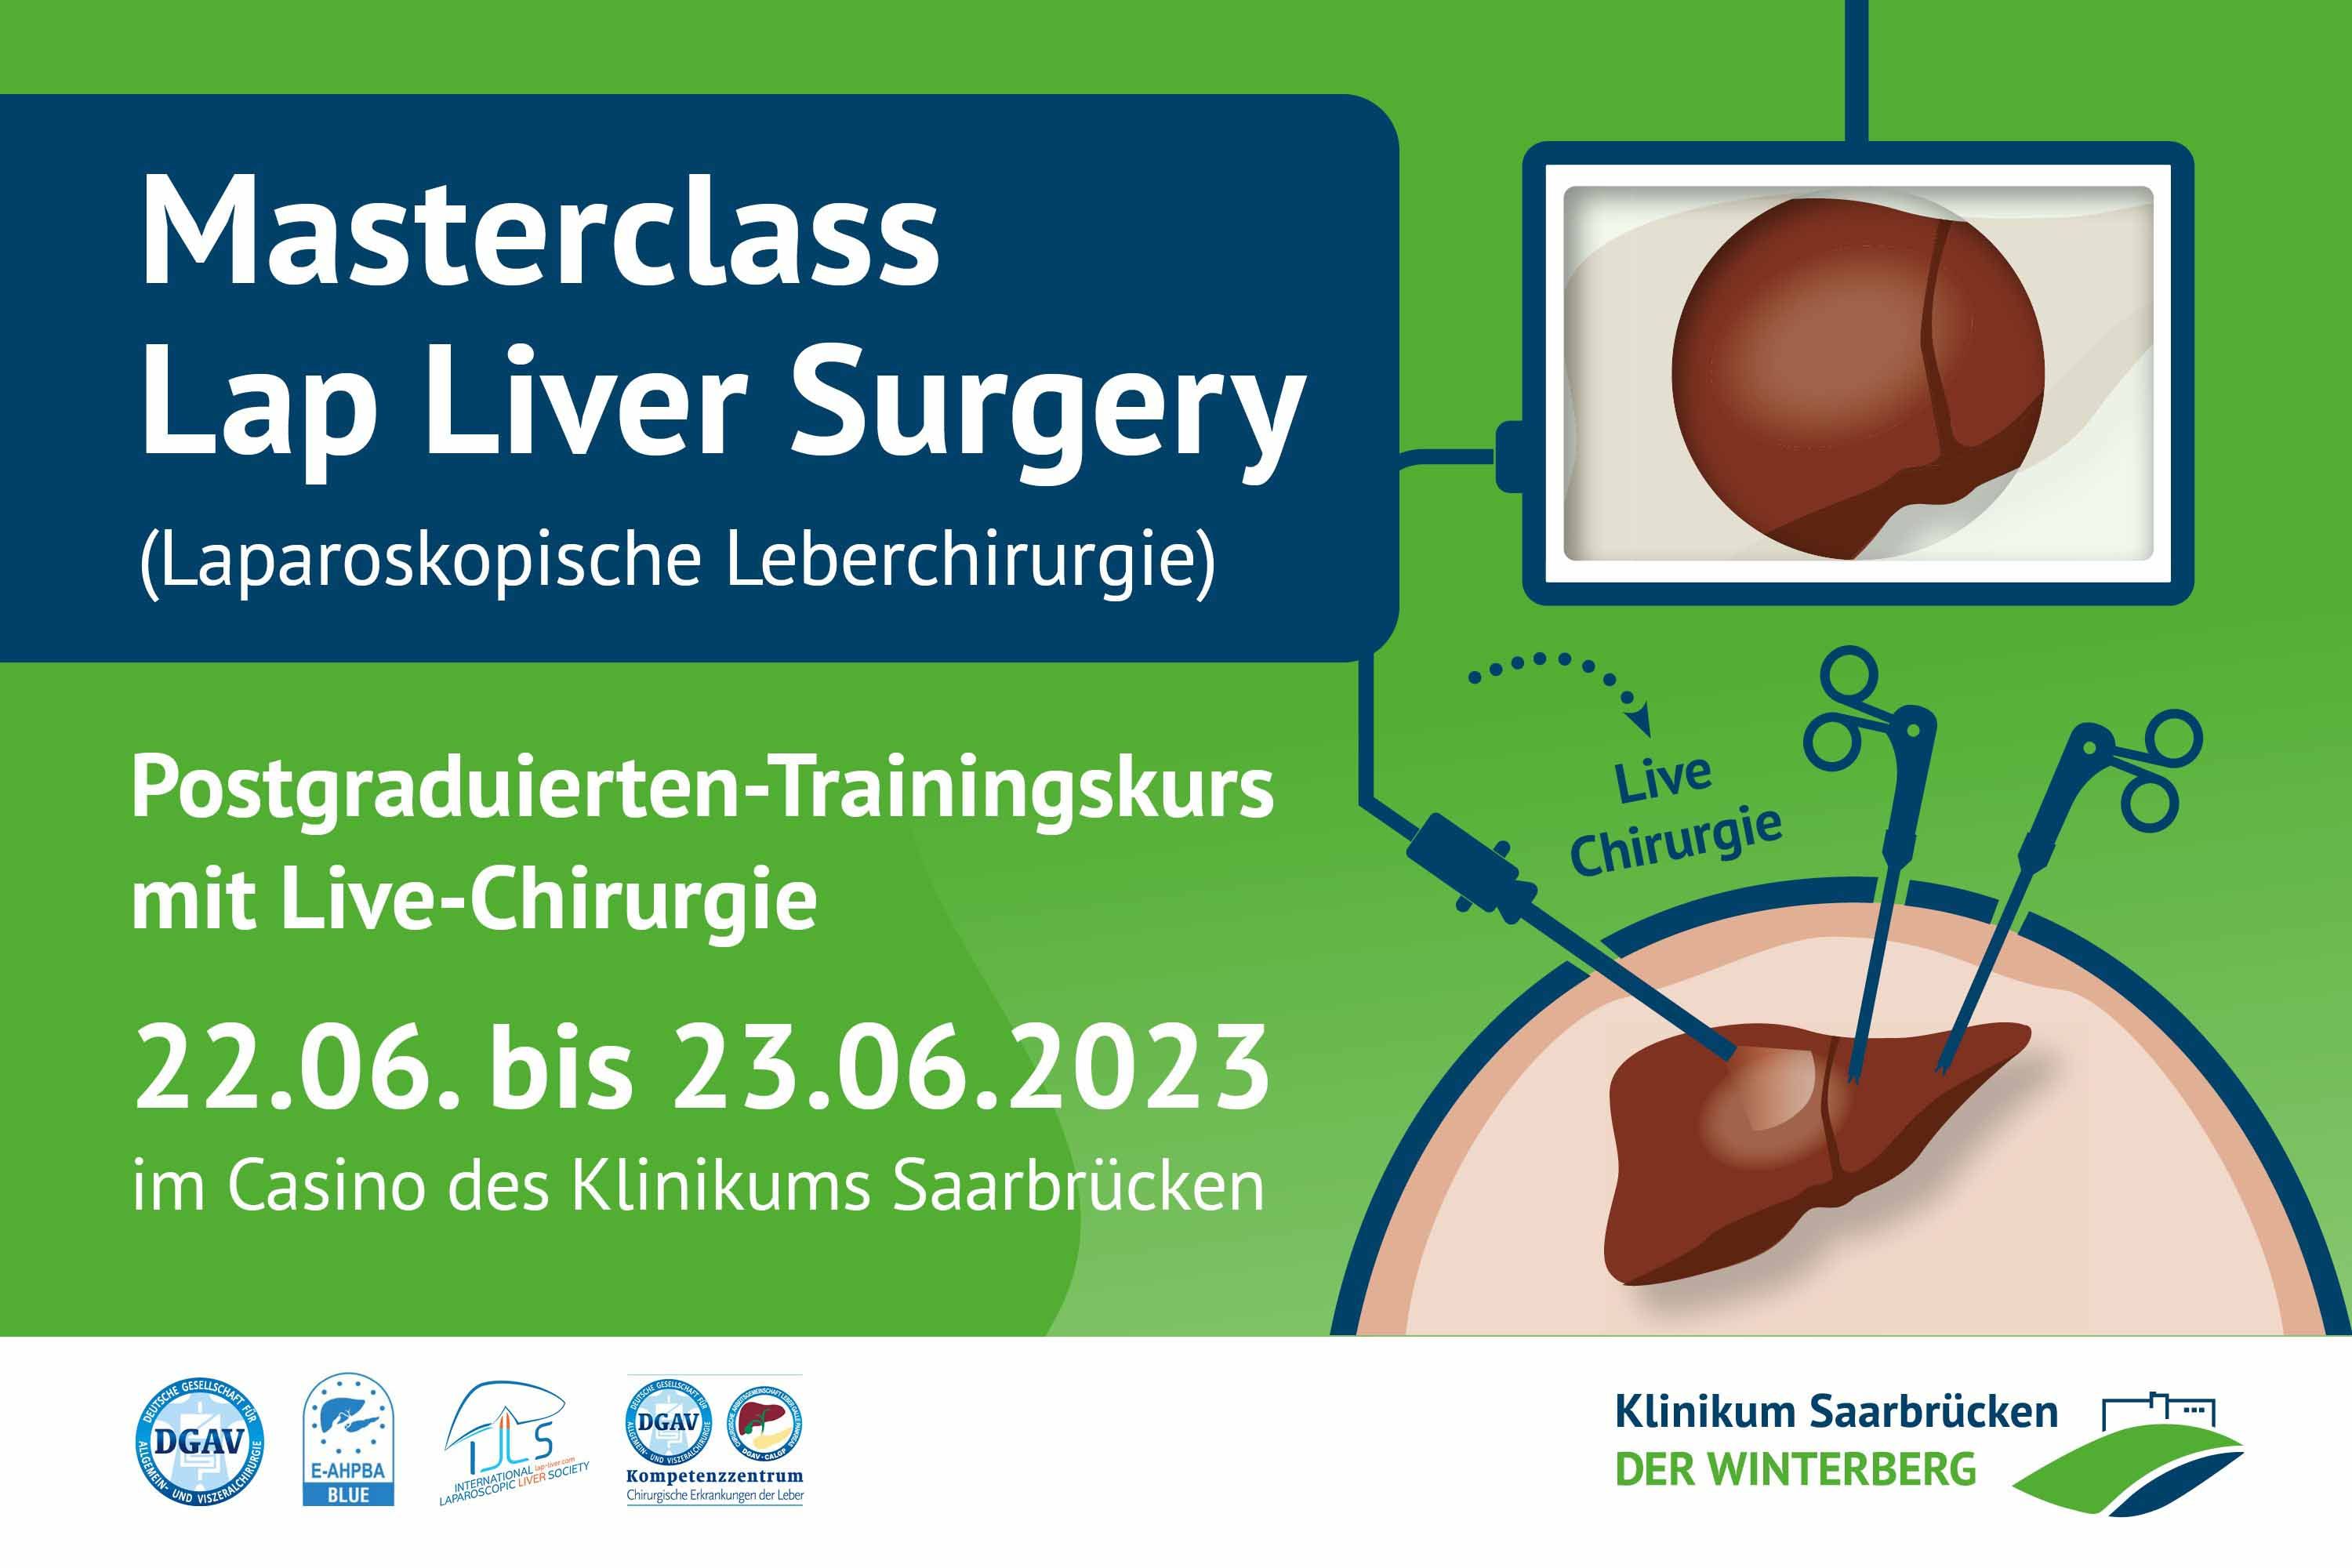 Die Masterclass "Lap Liver Surgery" findet am 22. und 23. Juni im Klinikum Saarbrücken statt. 